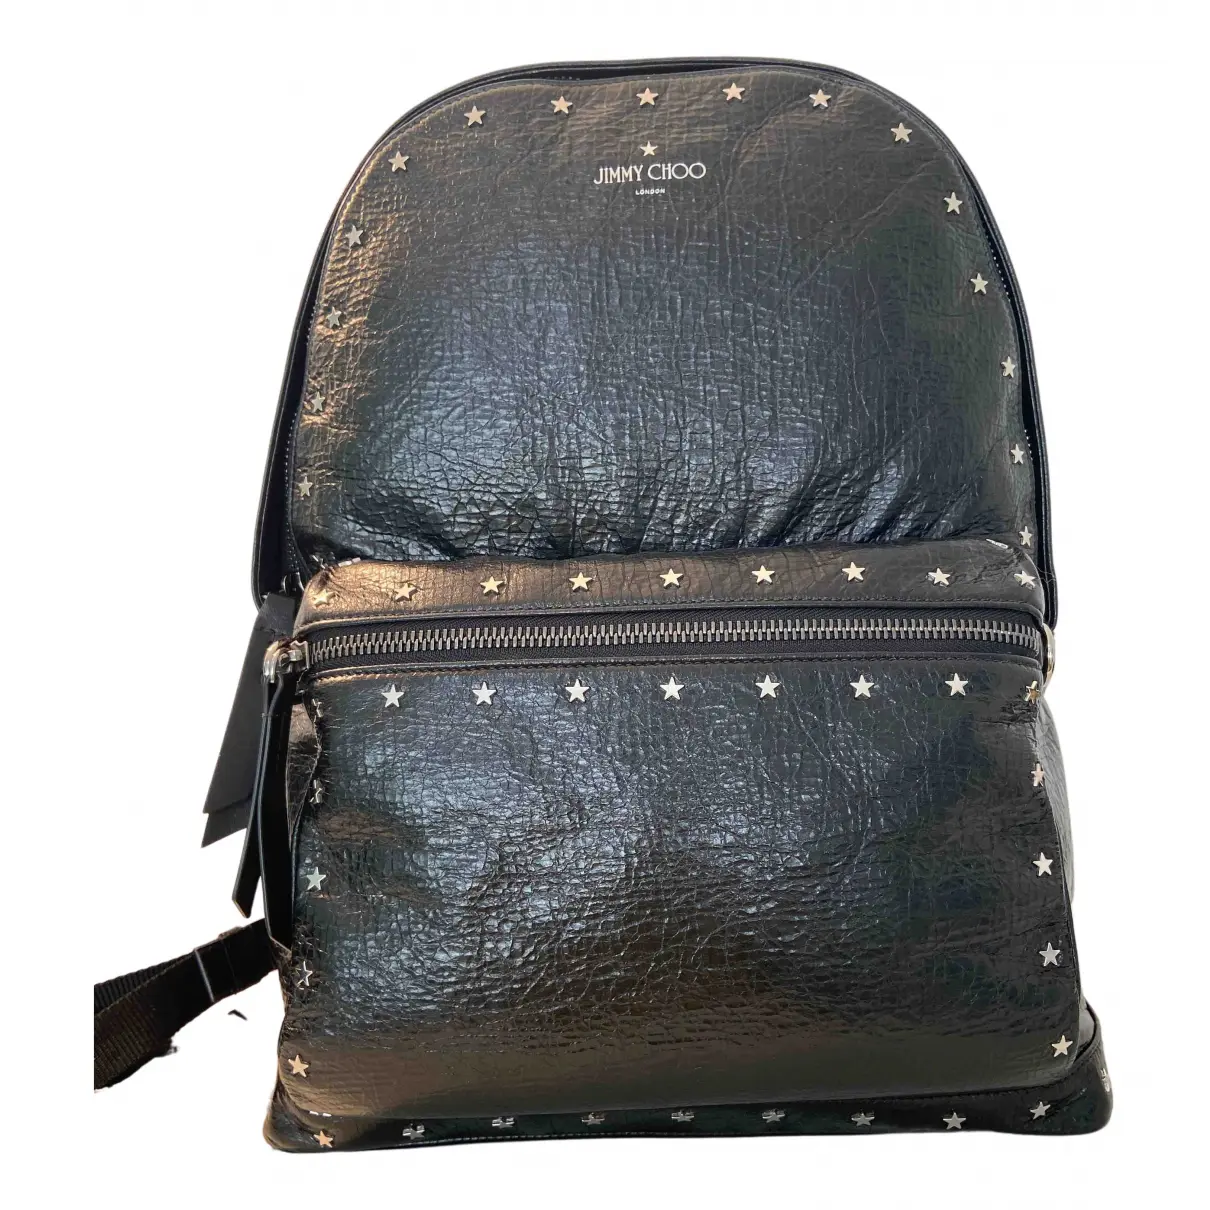 Leather backpack Jimmy Choo